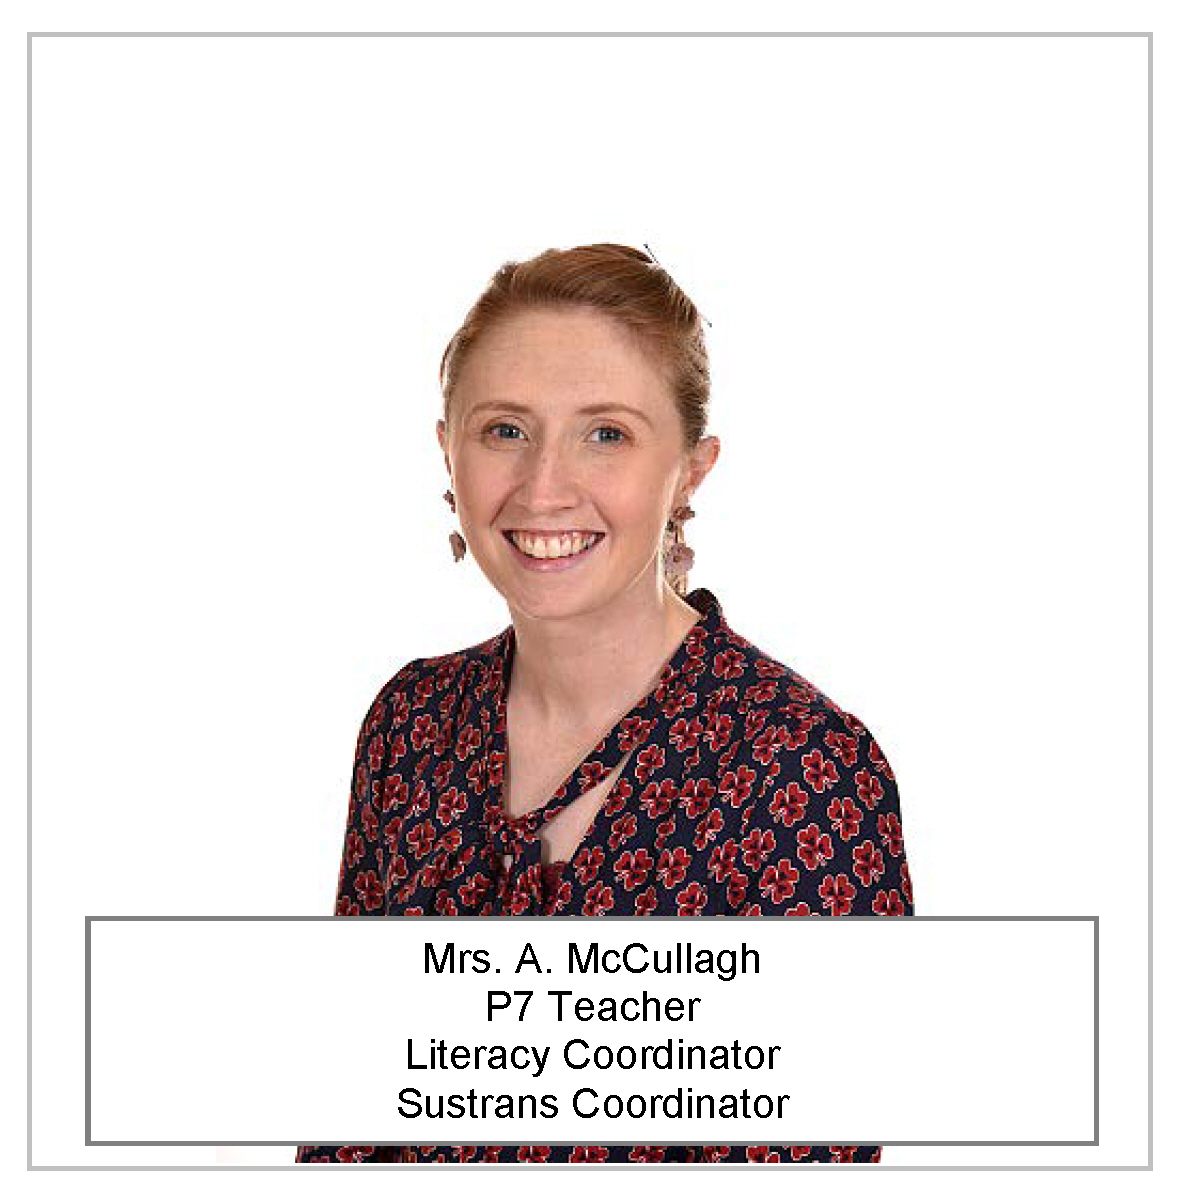 Mrs. A. McCullagh